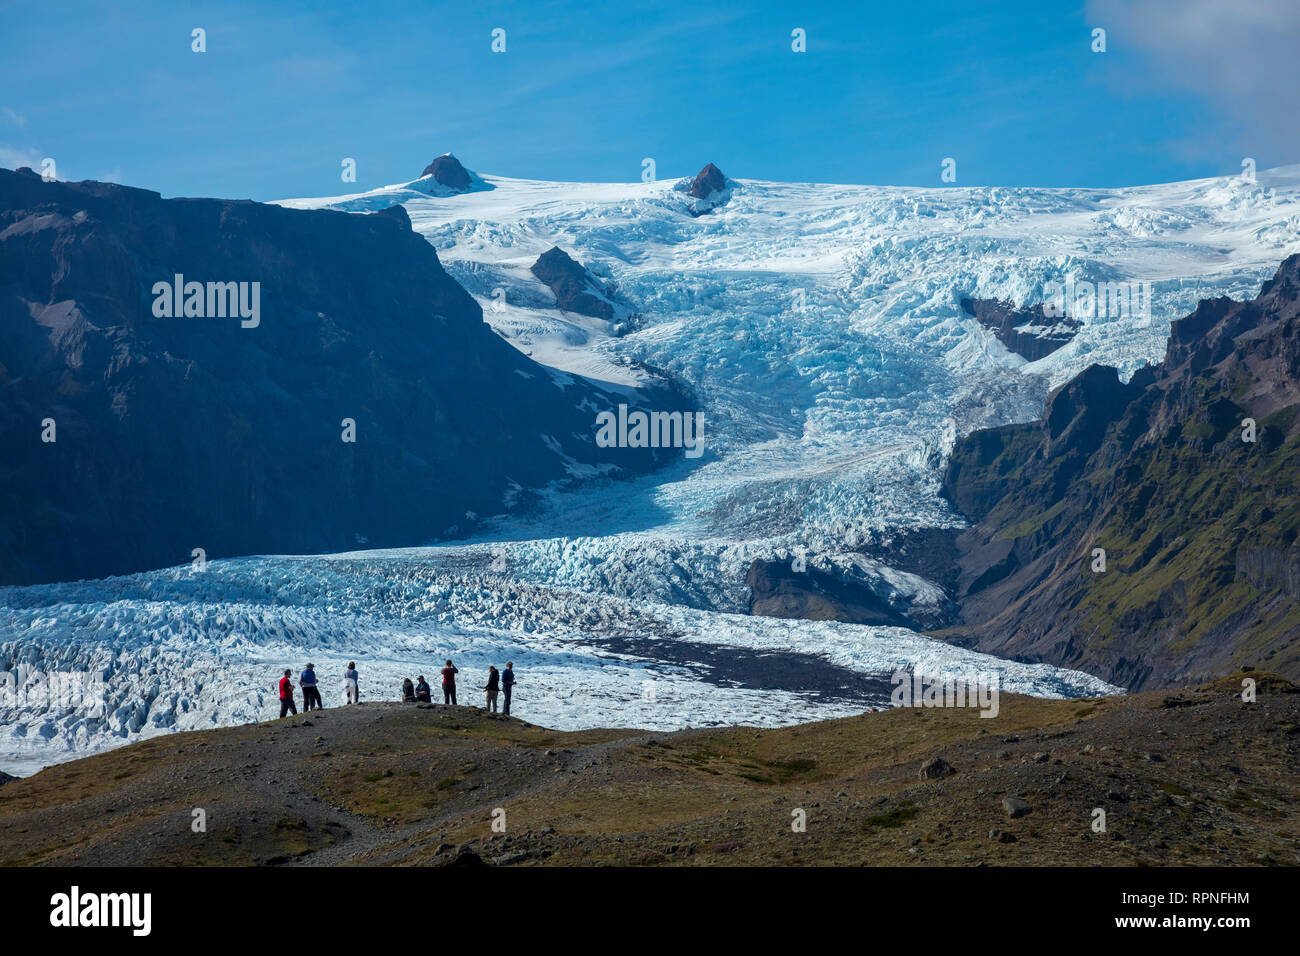 Les gens écrasés sous la chute de glace de glacier. Kviarjokulll La calotte glaciaire de Vatnajokull, Sudhurland, au sud est de l'Islande. Banque D'Images